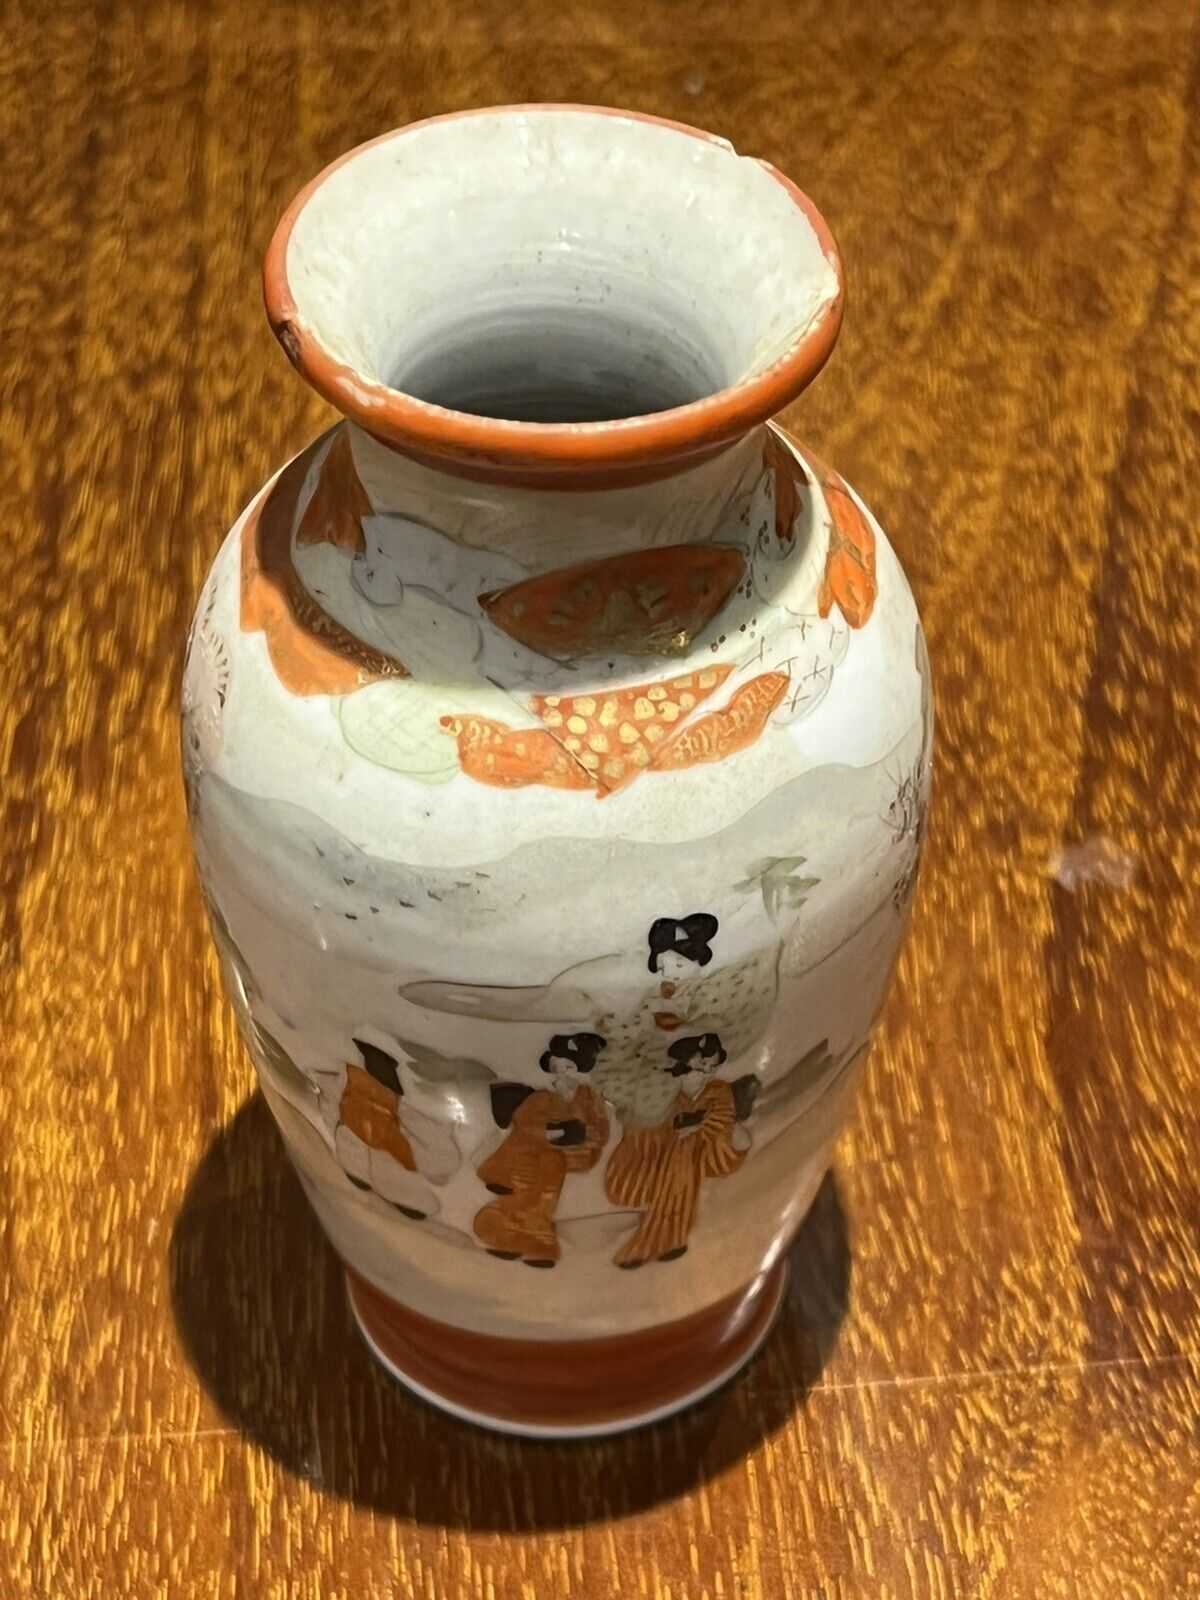 Small Satsuma Vase